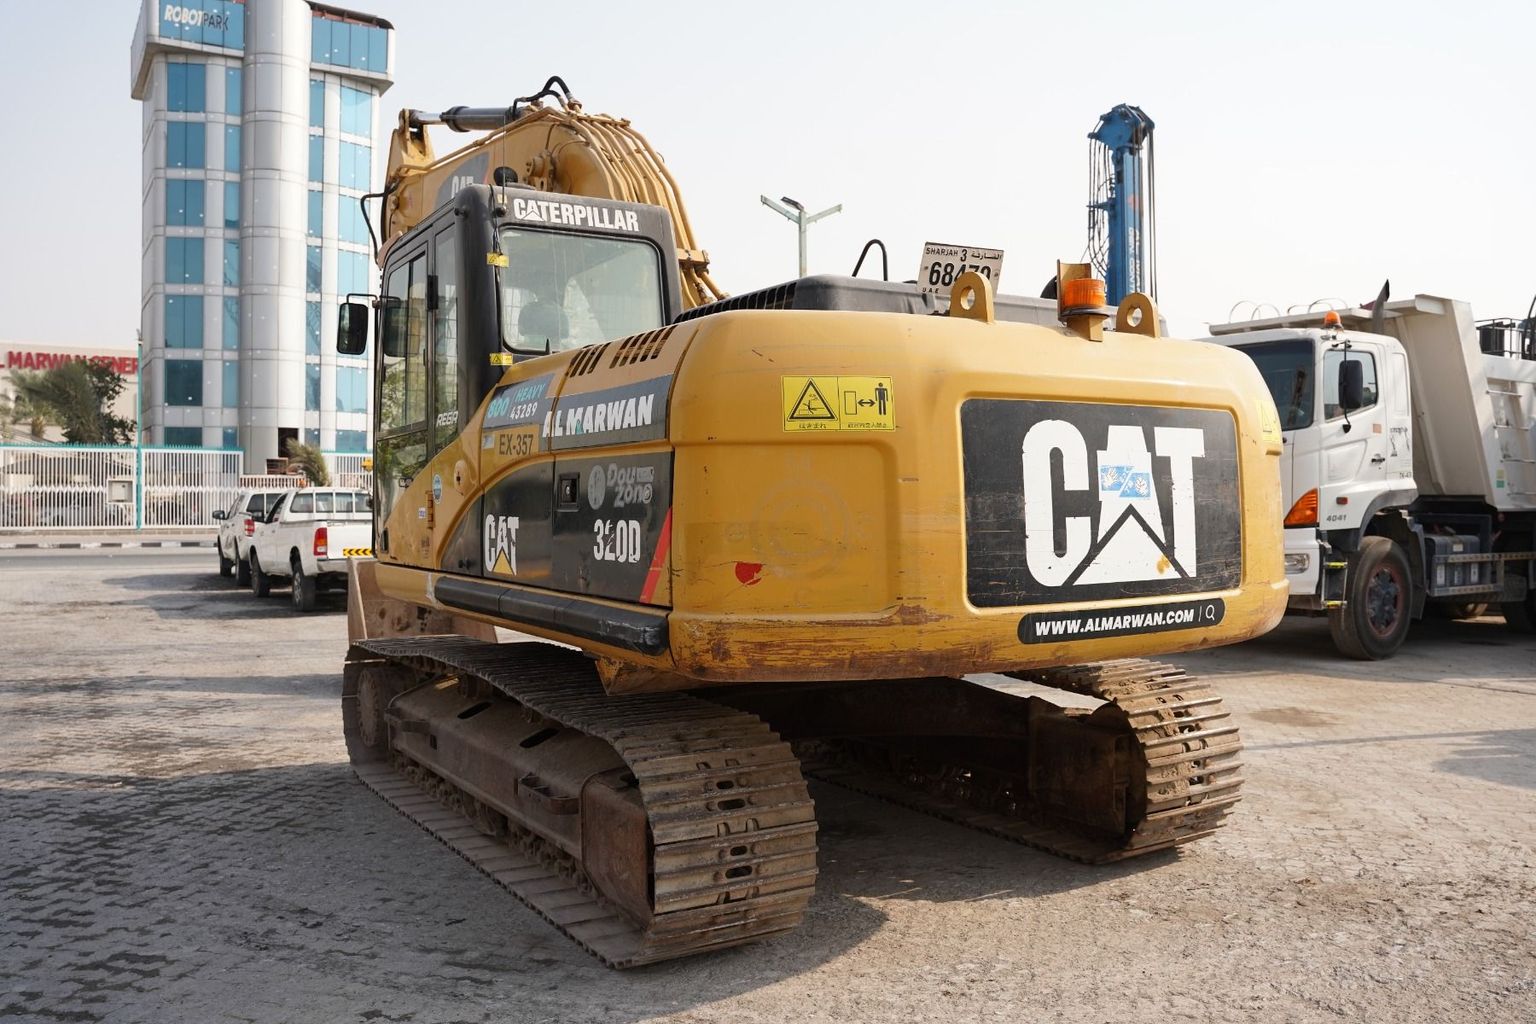 2007 CAT 320D Track Excavator EX-0357 | Al Marwan